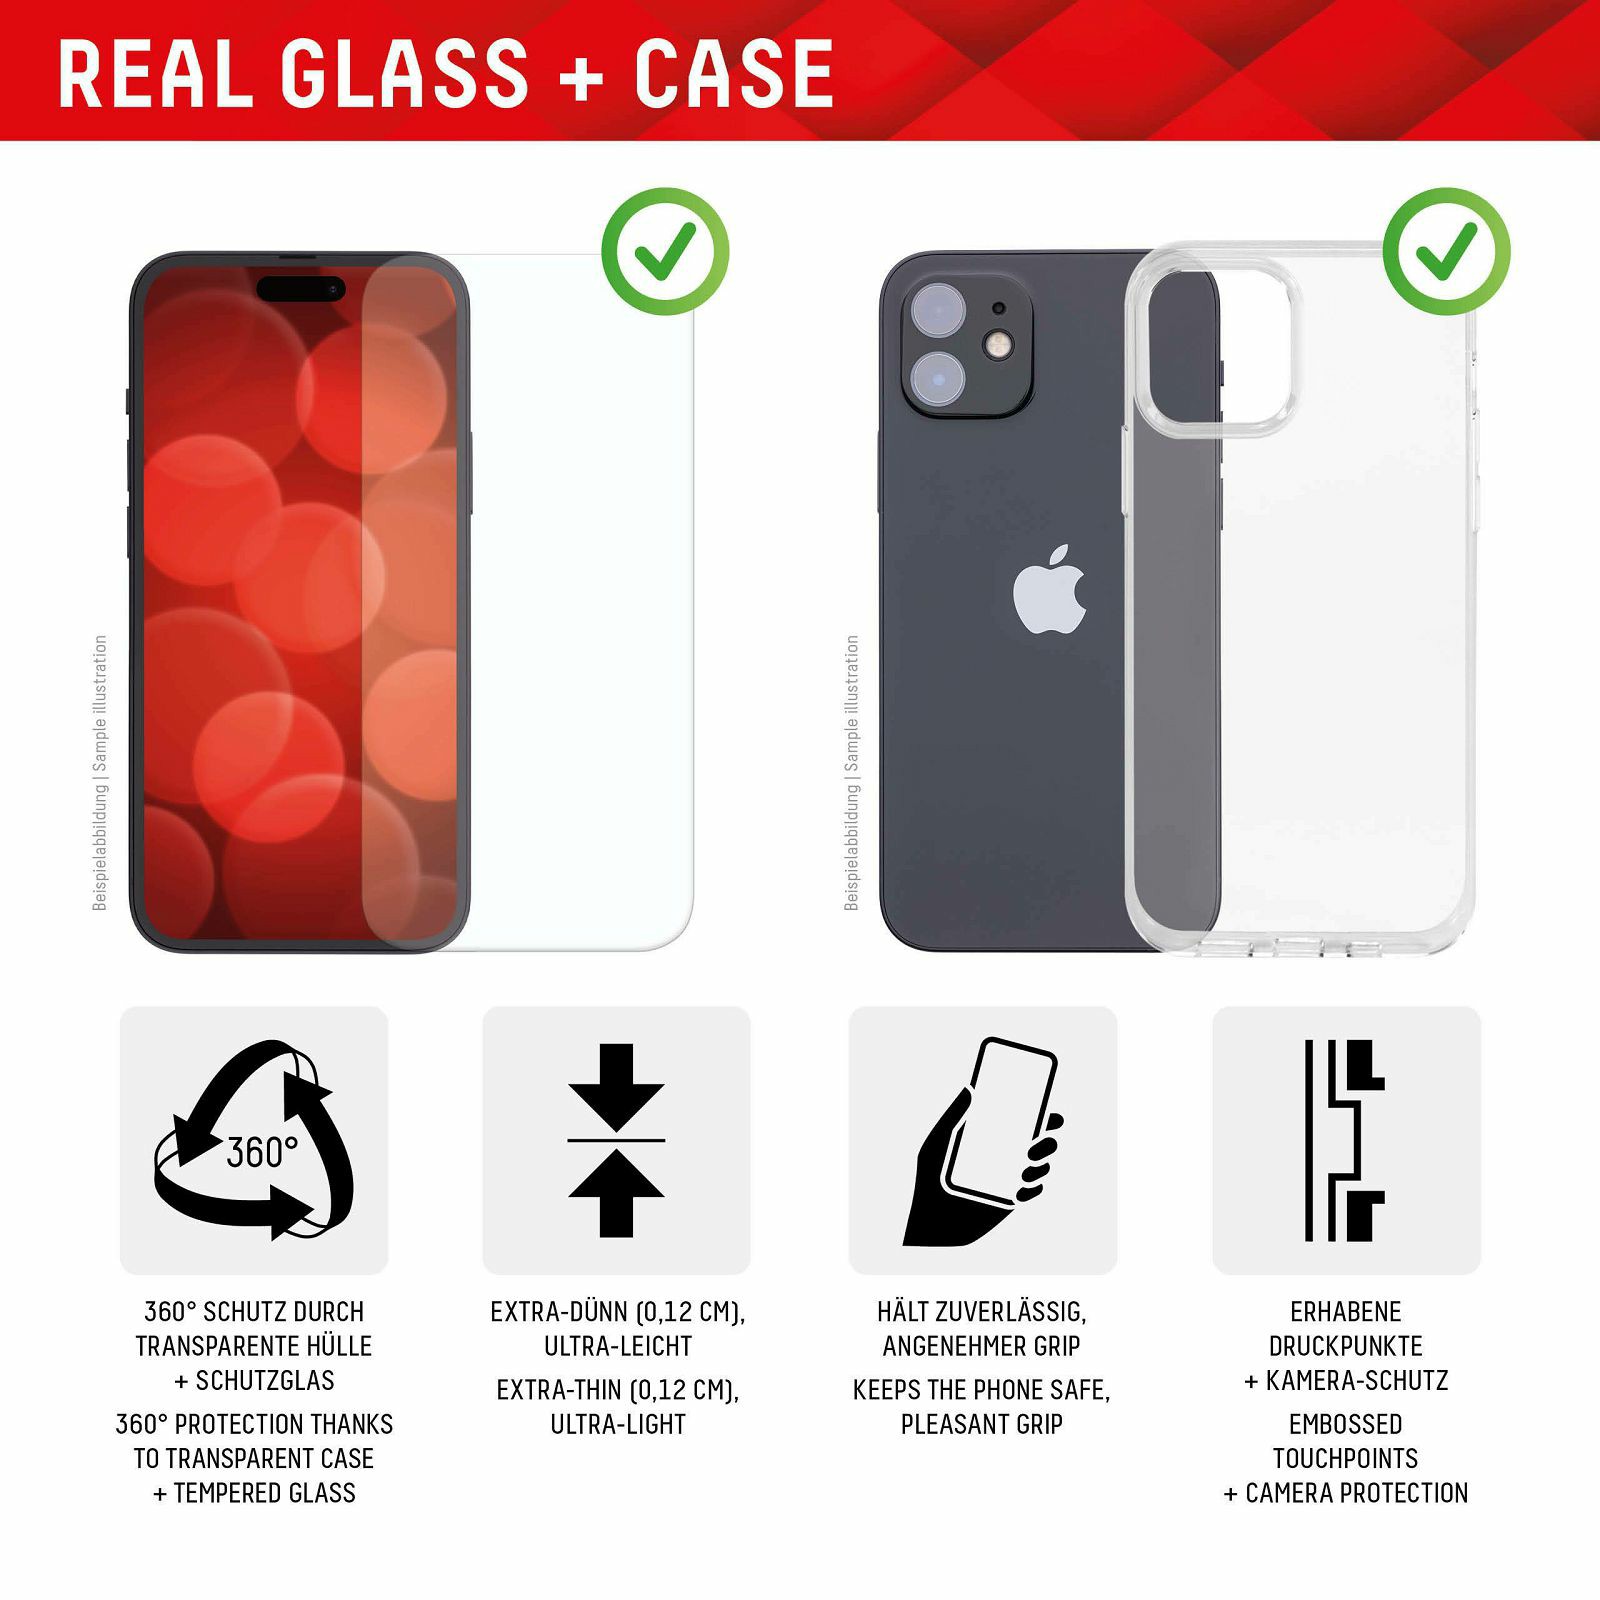 displex-zastitno-staklo-maskica-real-glass-2d-case-za-iphone-80083-181729_46628.jpg